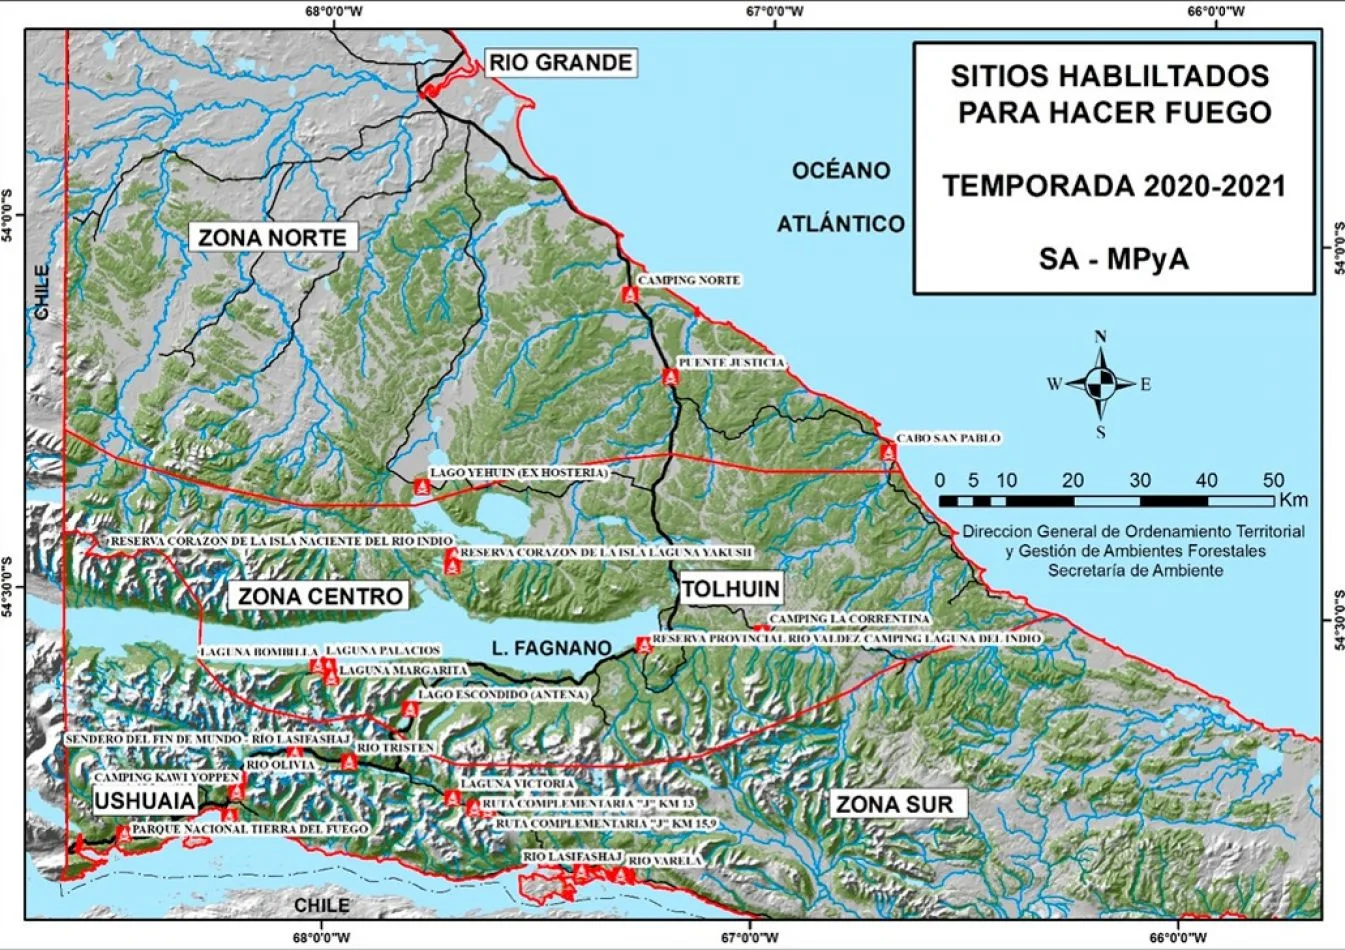 Informe semanal de lugares habilitados para hacer fuego en Tierra del Fuego